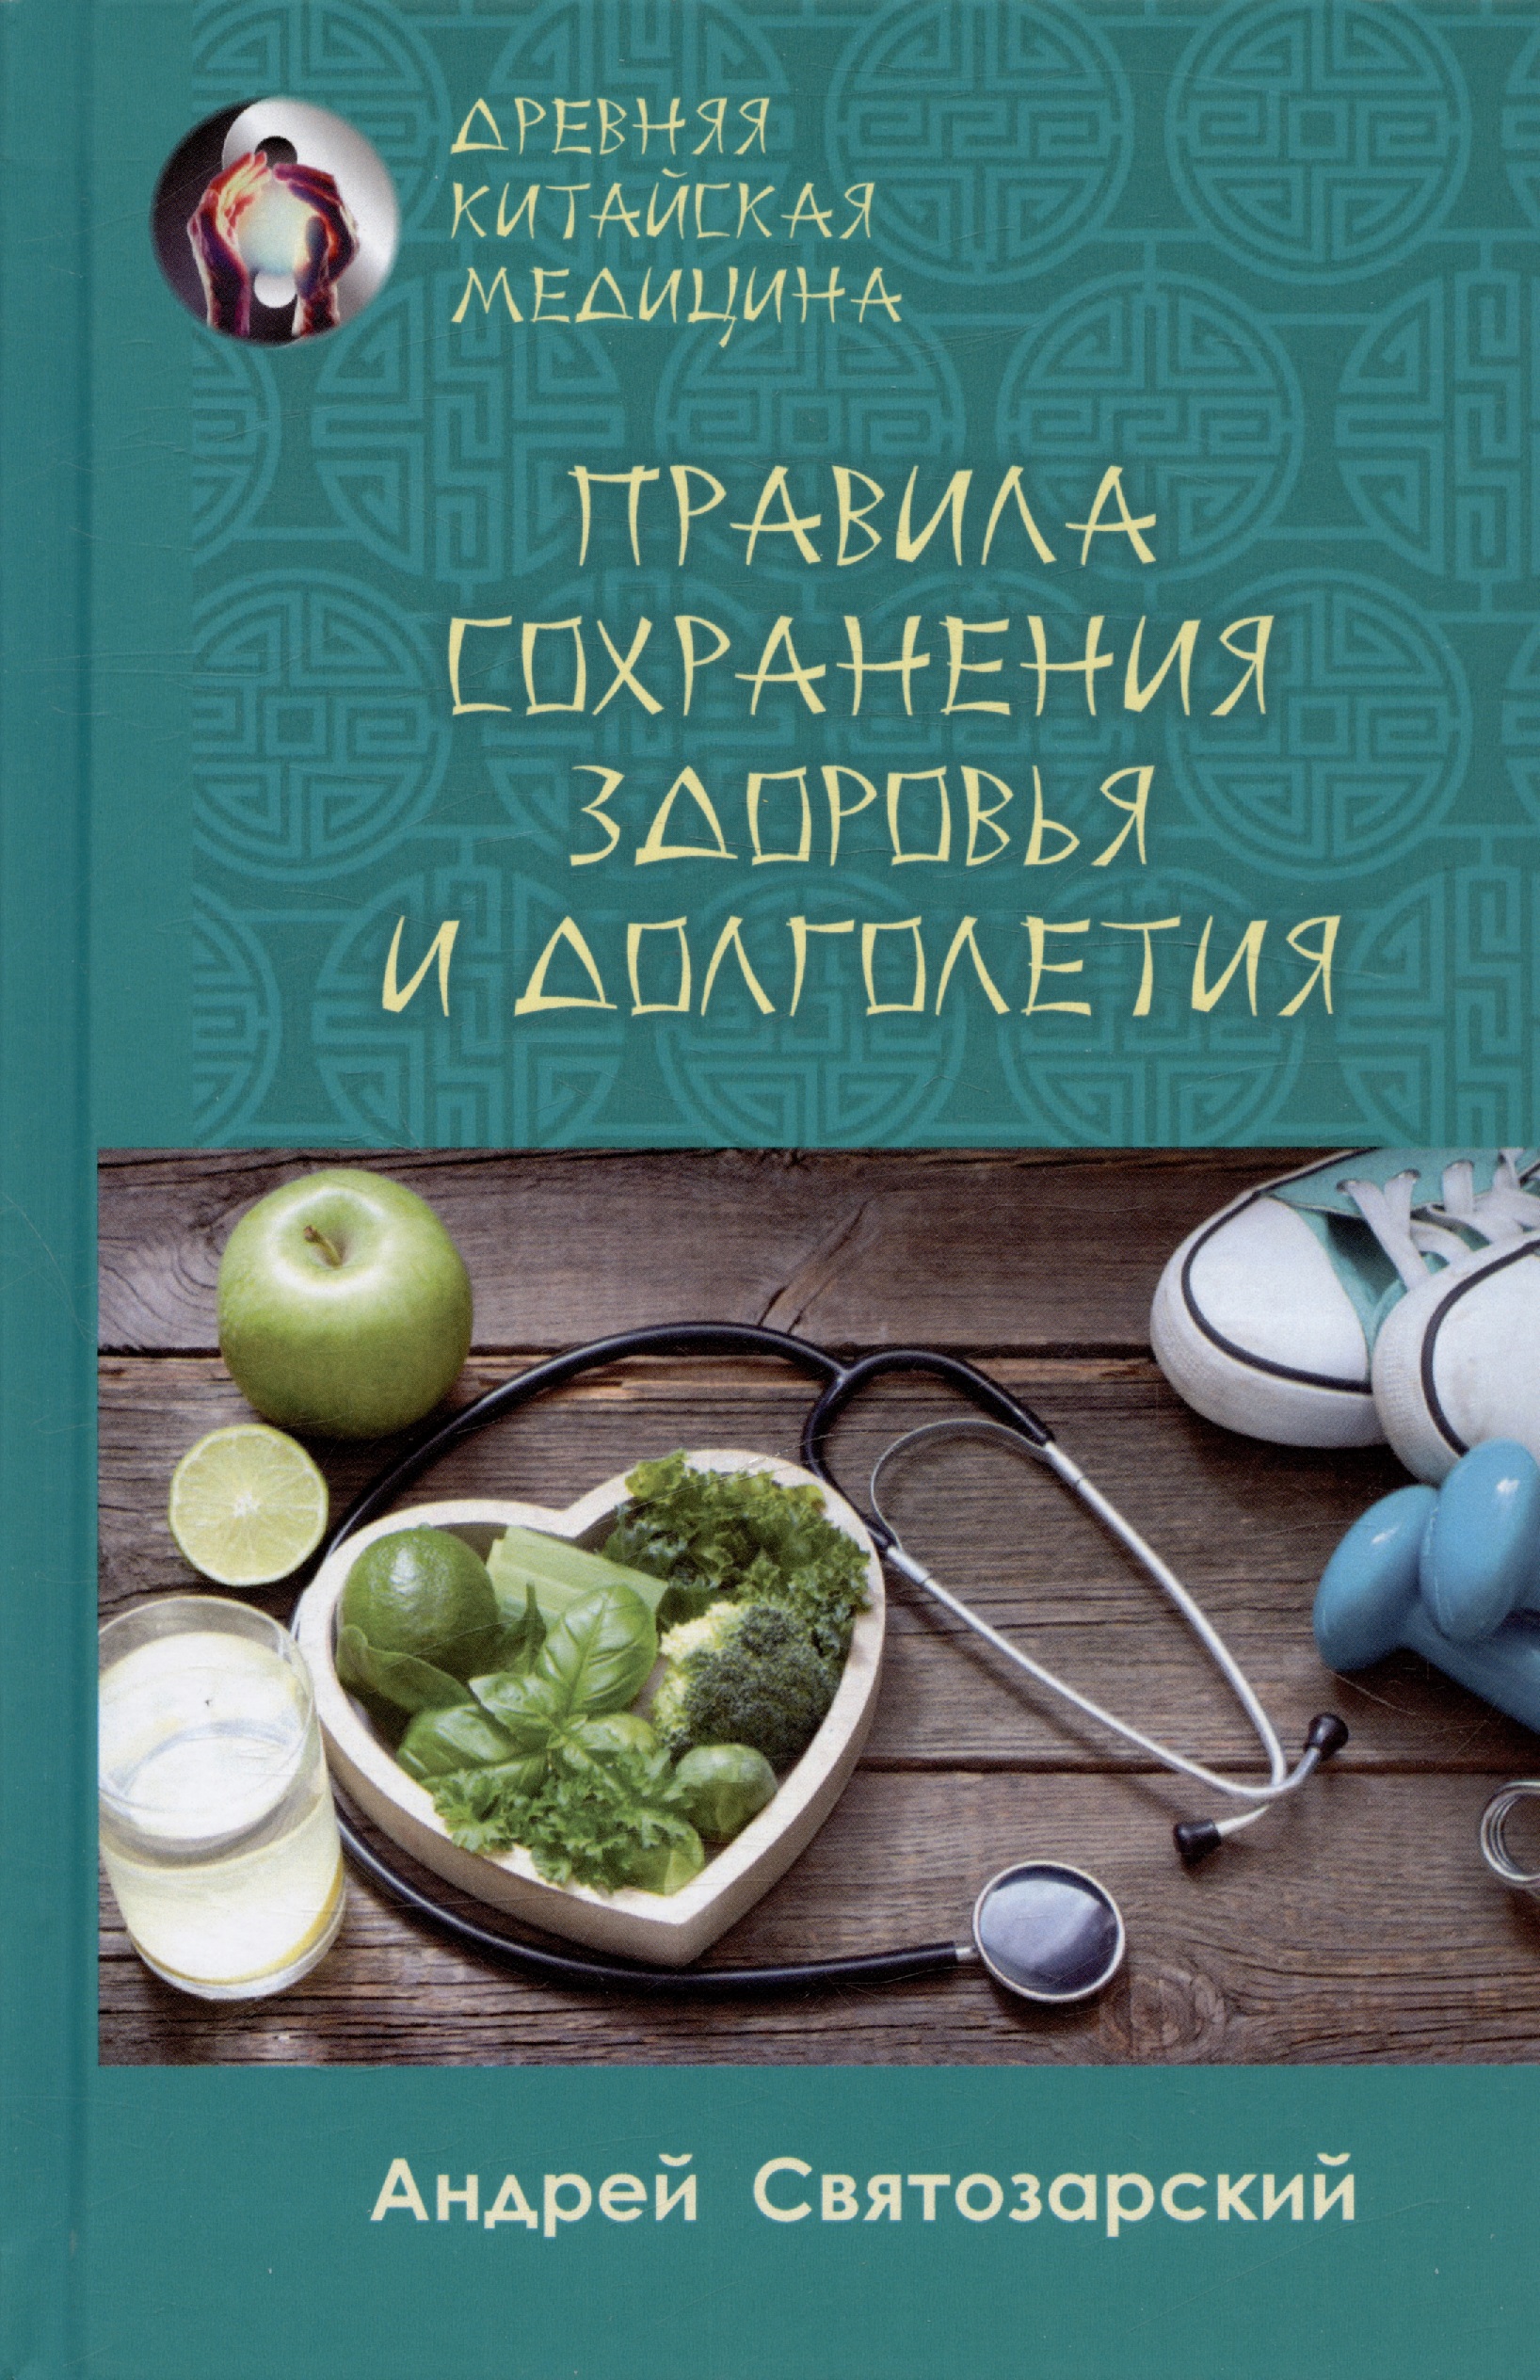 Святозарский Андрей Николаевич - Правила сохранения здоровья и долголетия